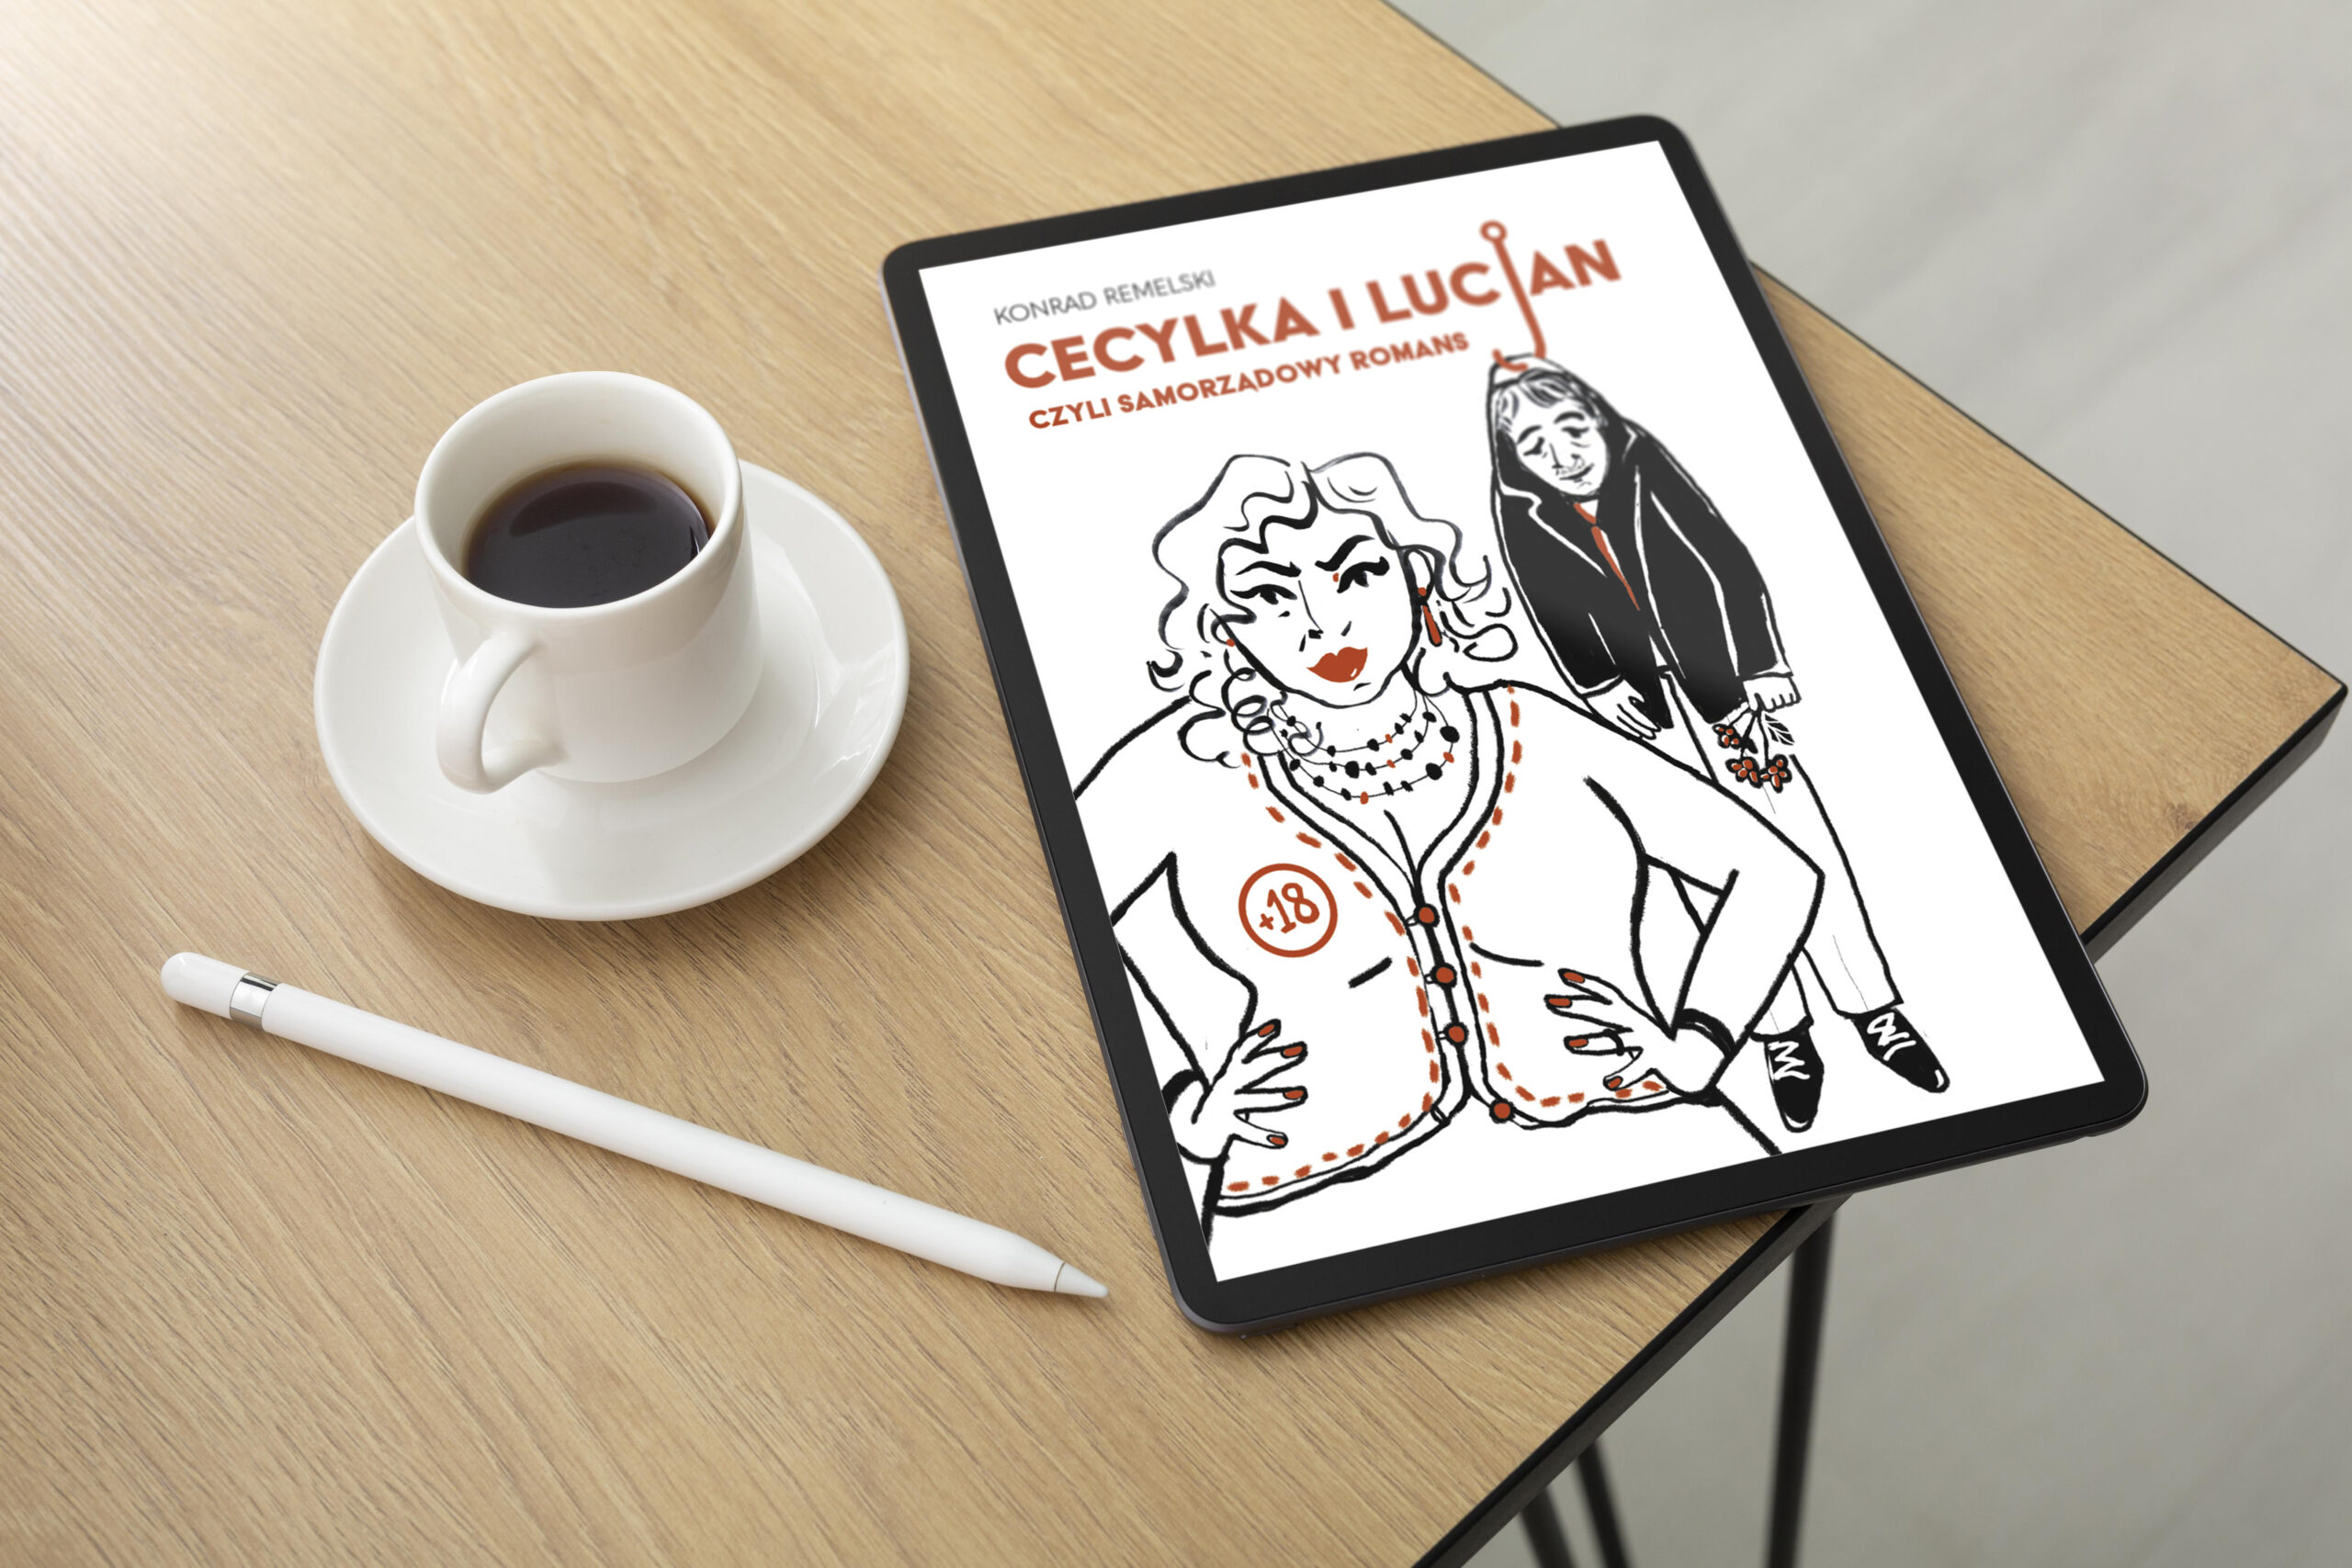 Cecylka i Lucjan, czyli samorządowy romans ebook